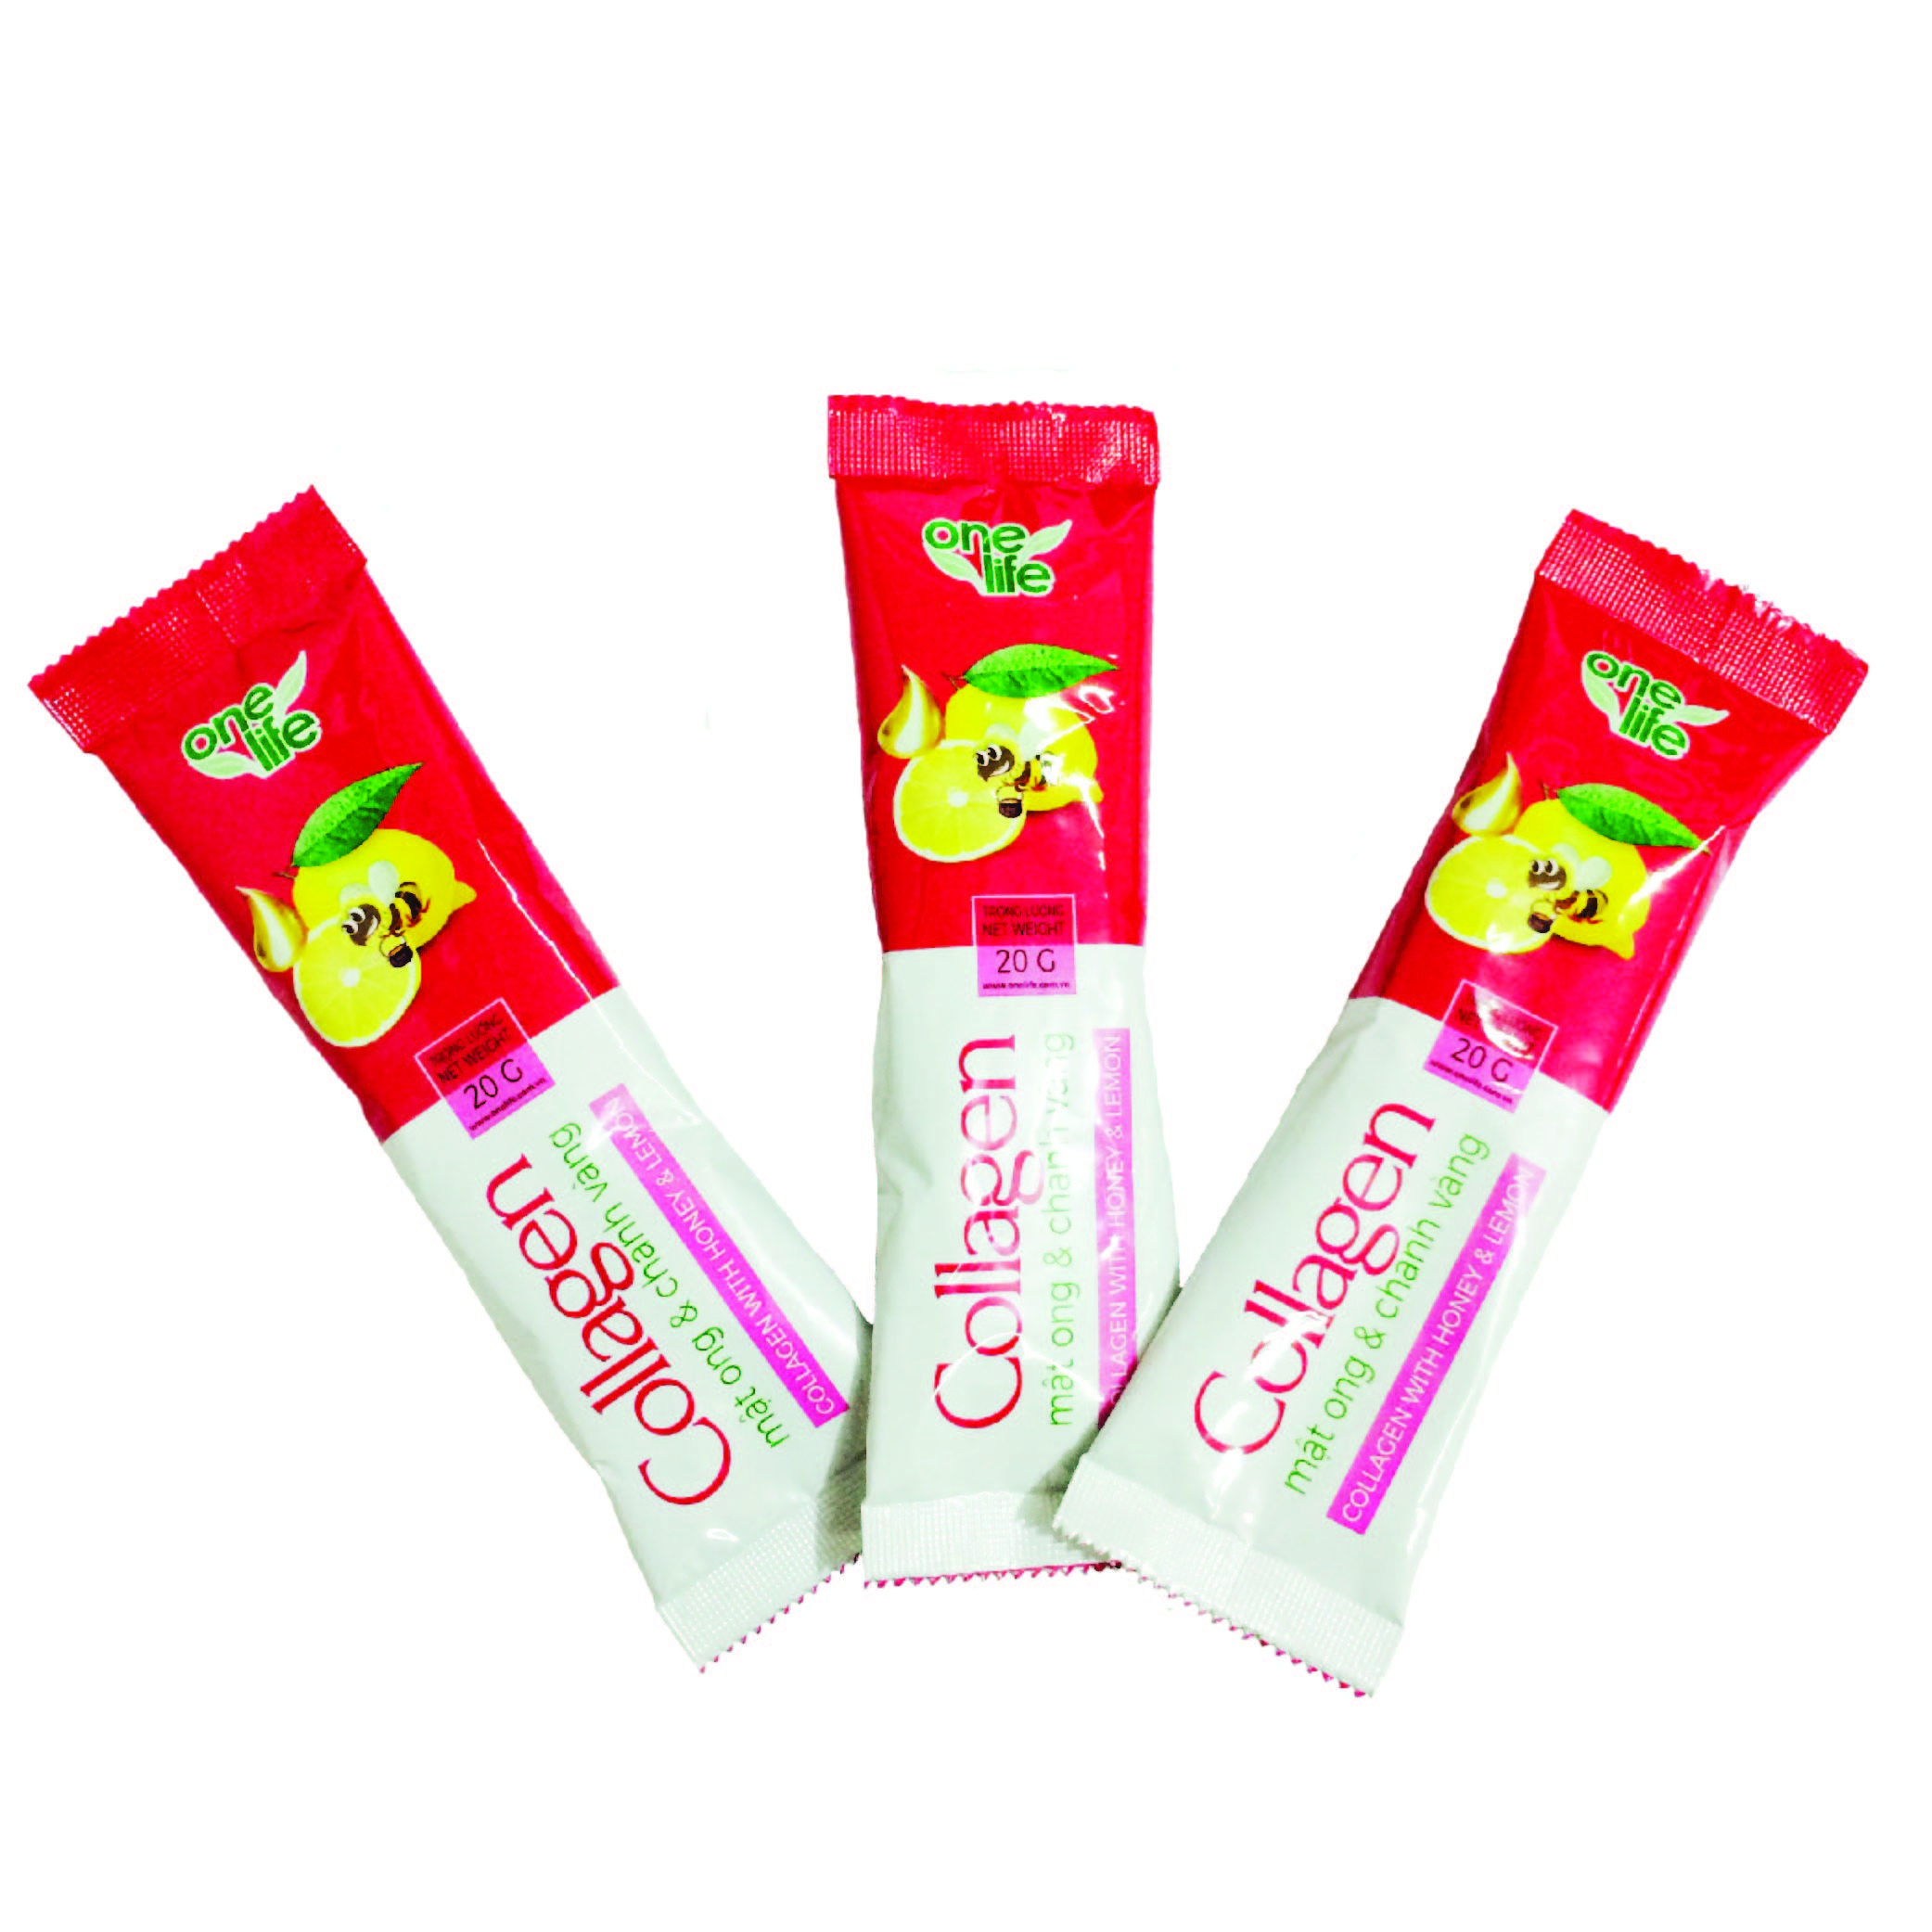 Thực Phẩm Bổ sung Collagen Mật Ong Chanh Vàng Tự Nhiên OneLife (100% Bột collagen Cá Nhật Bản) – Hộp 7 gói x 20gr/gói